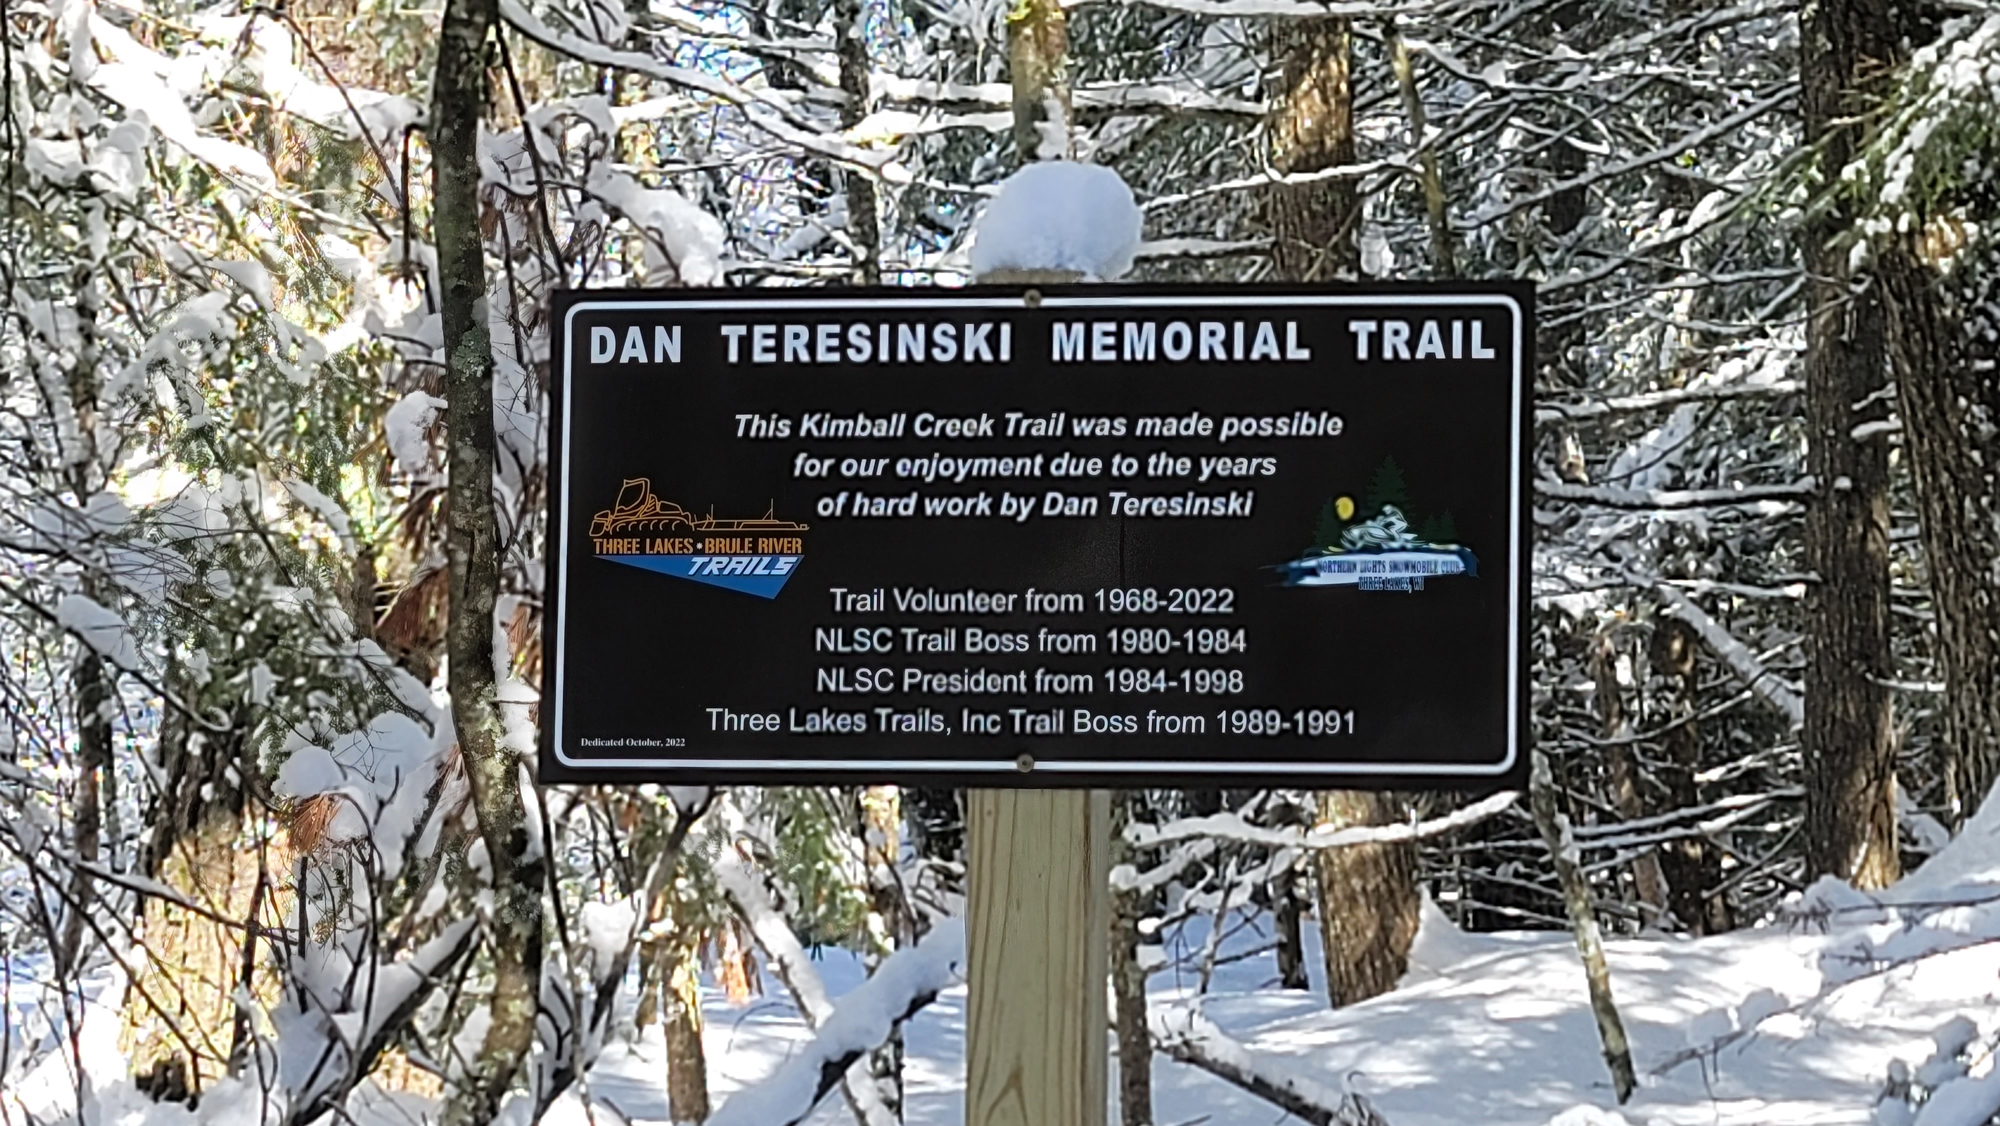 Dan Teresinski memorial trail sign.